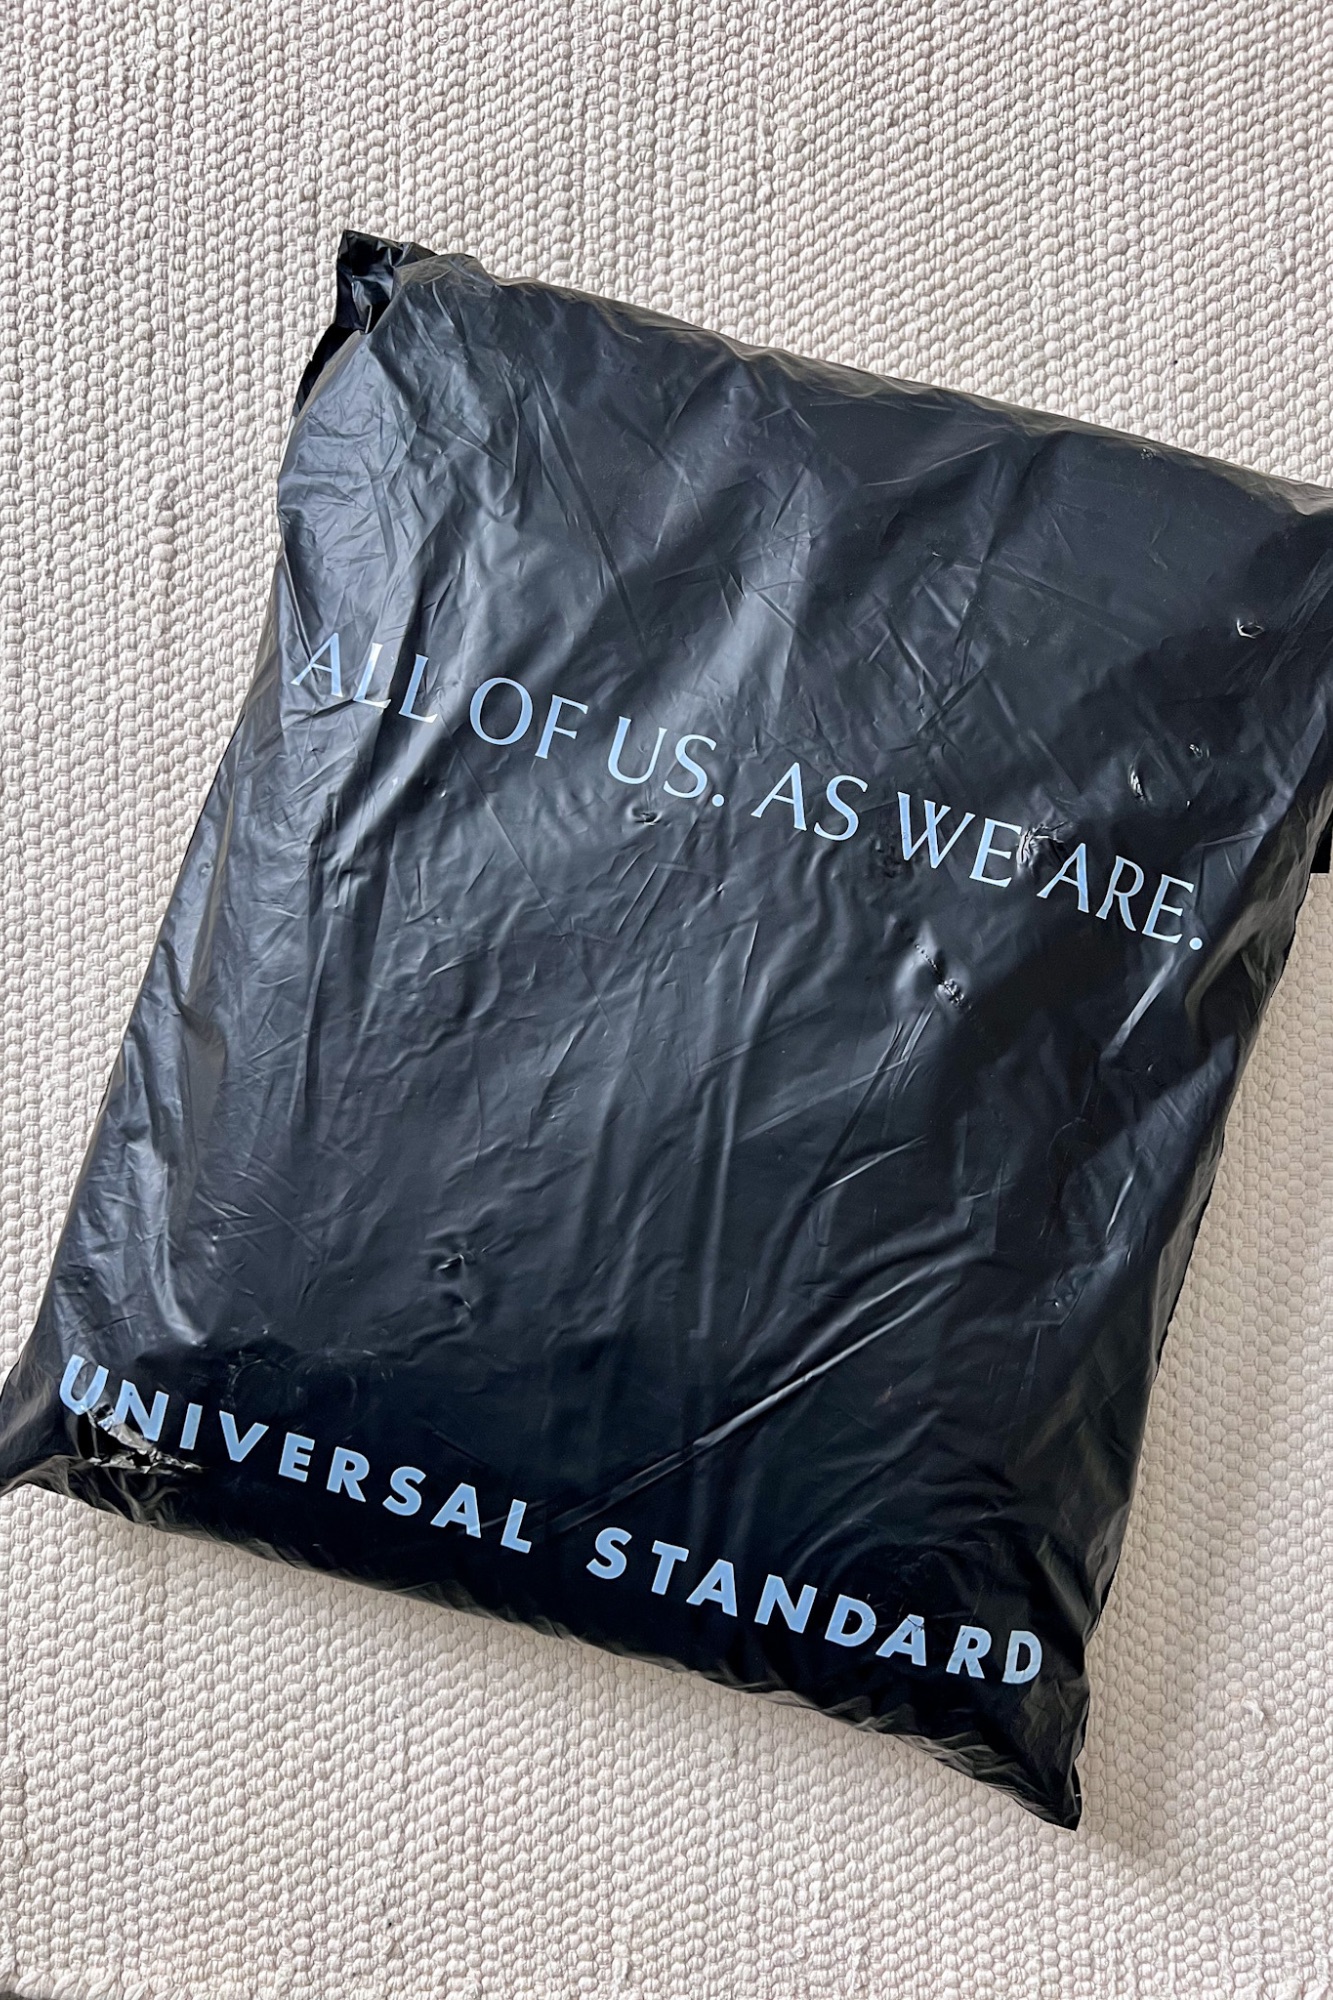 A Universal Standard shipper bag